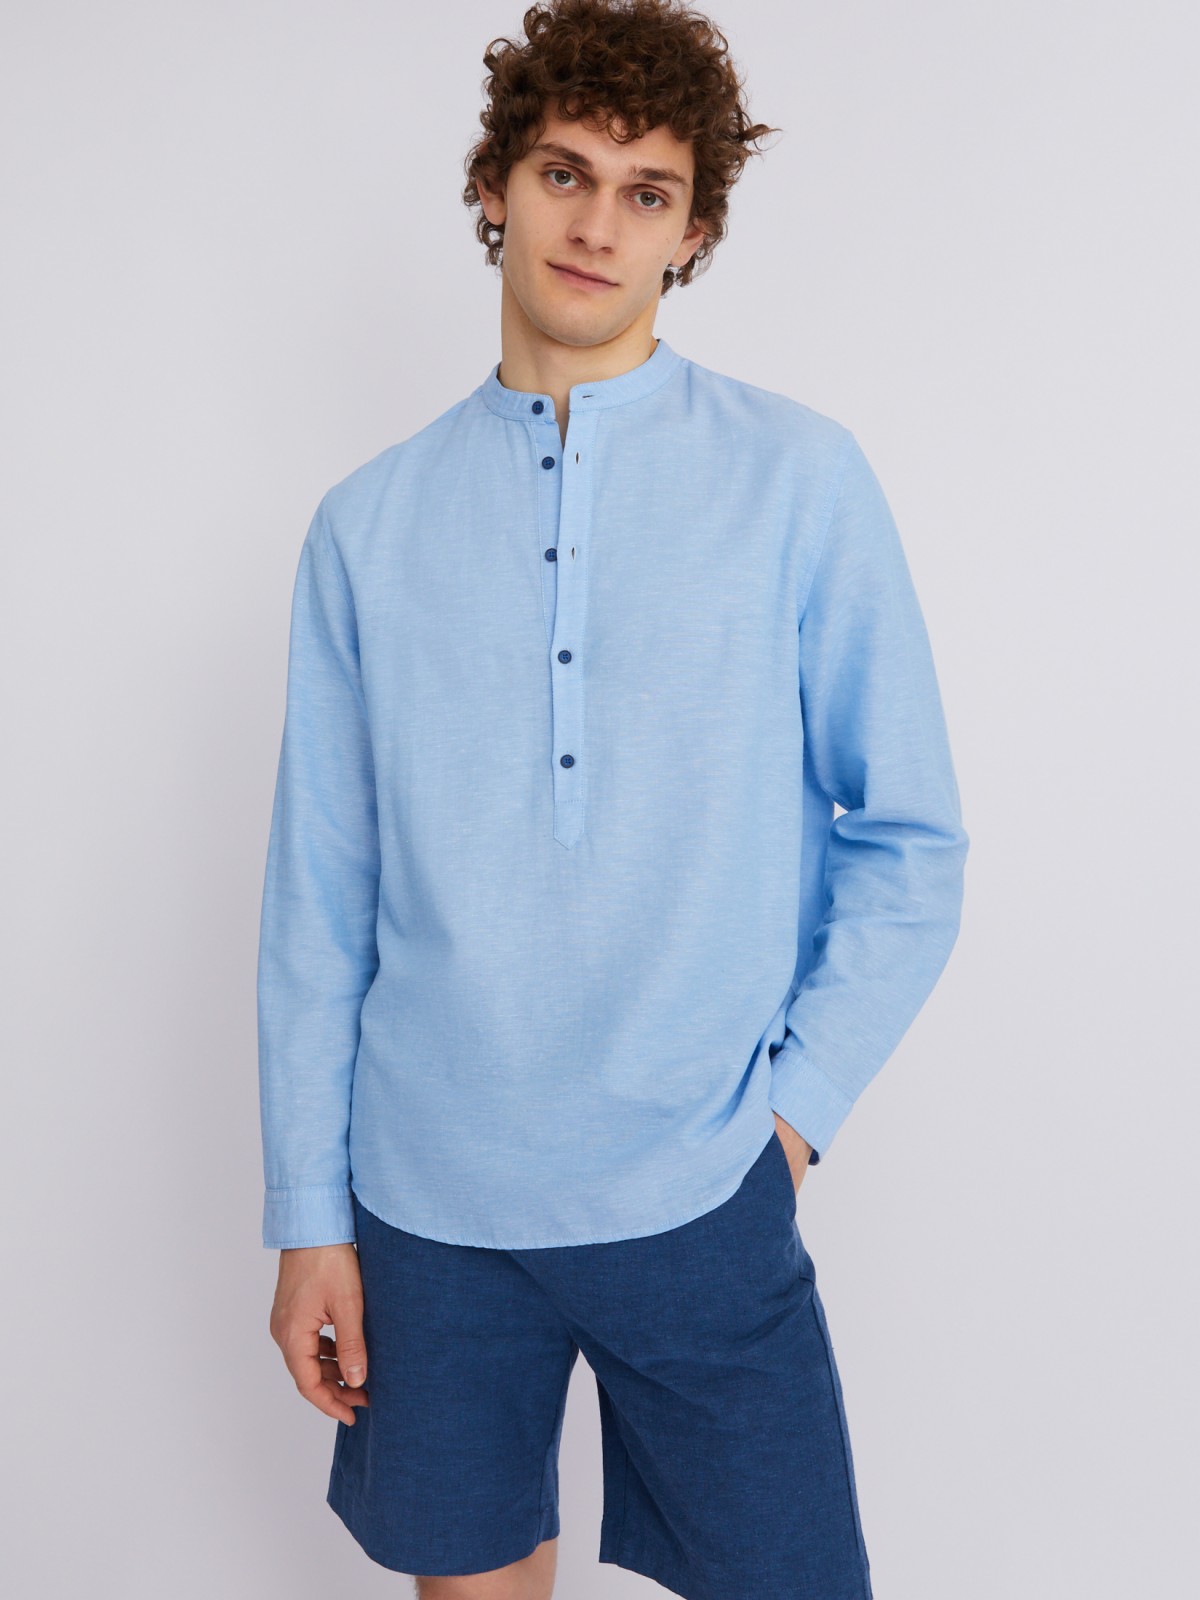 Рубашка из льна с длинным рукавом zolla 013232159013, цвет светло-голубой, размер S - фото 5